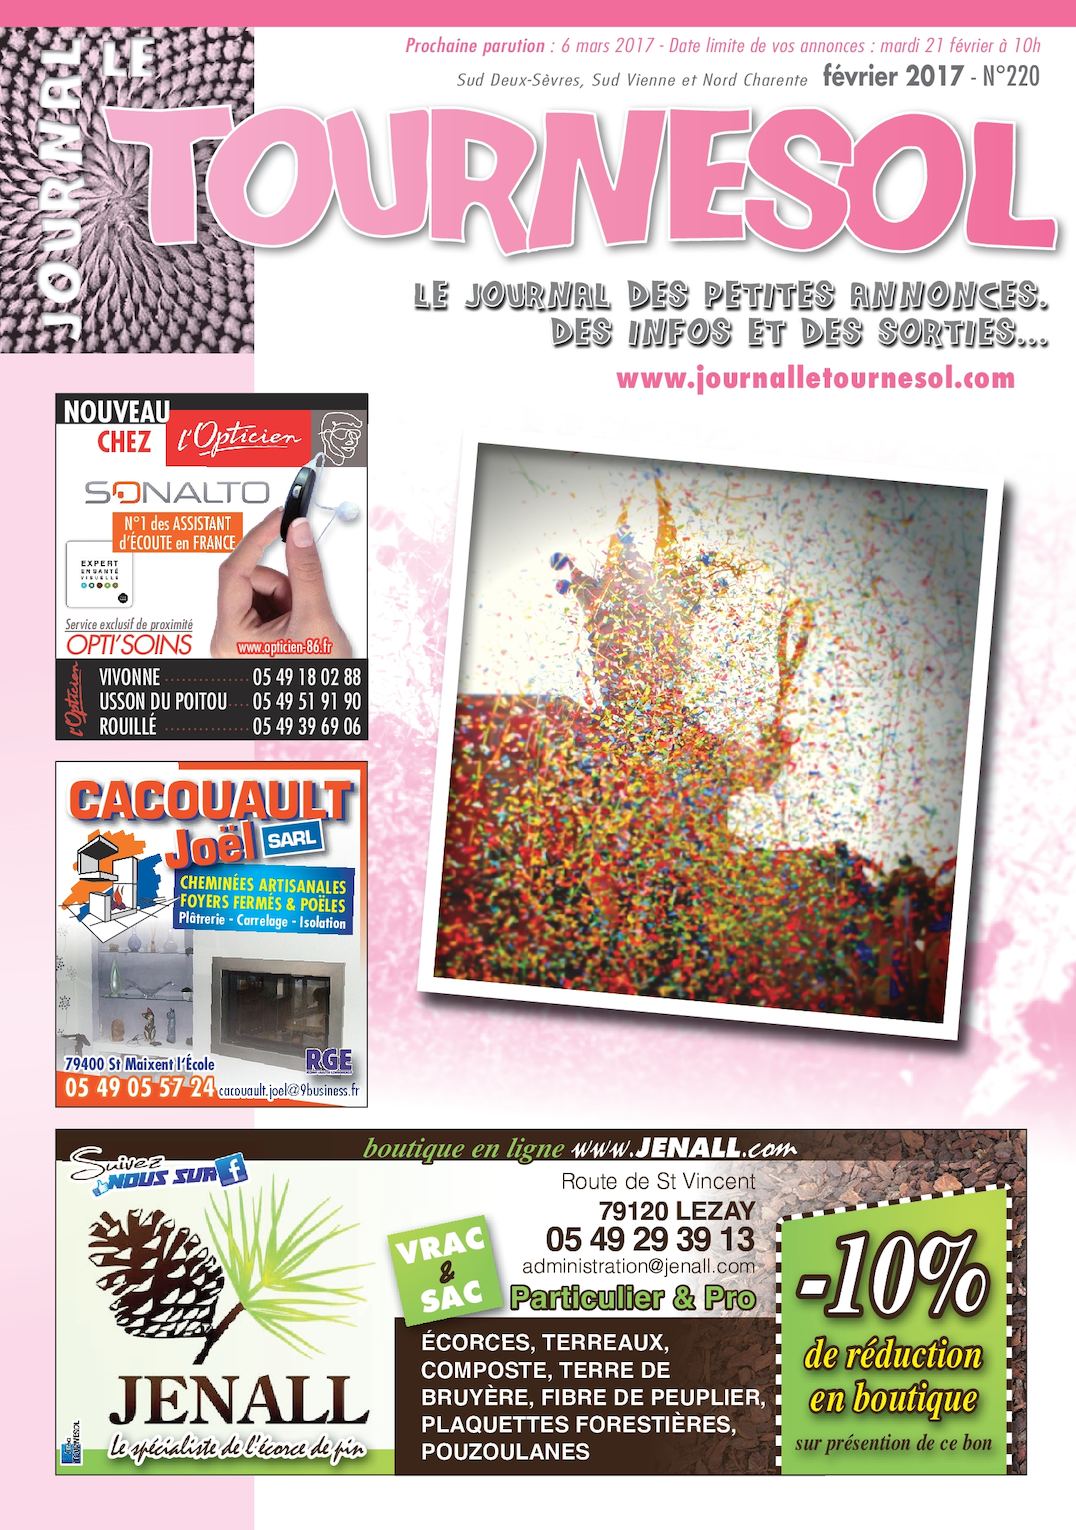 Magazine De Jardinage Luxe Calaméo Journal Le tournesol Février 2017